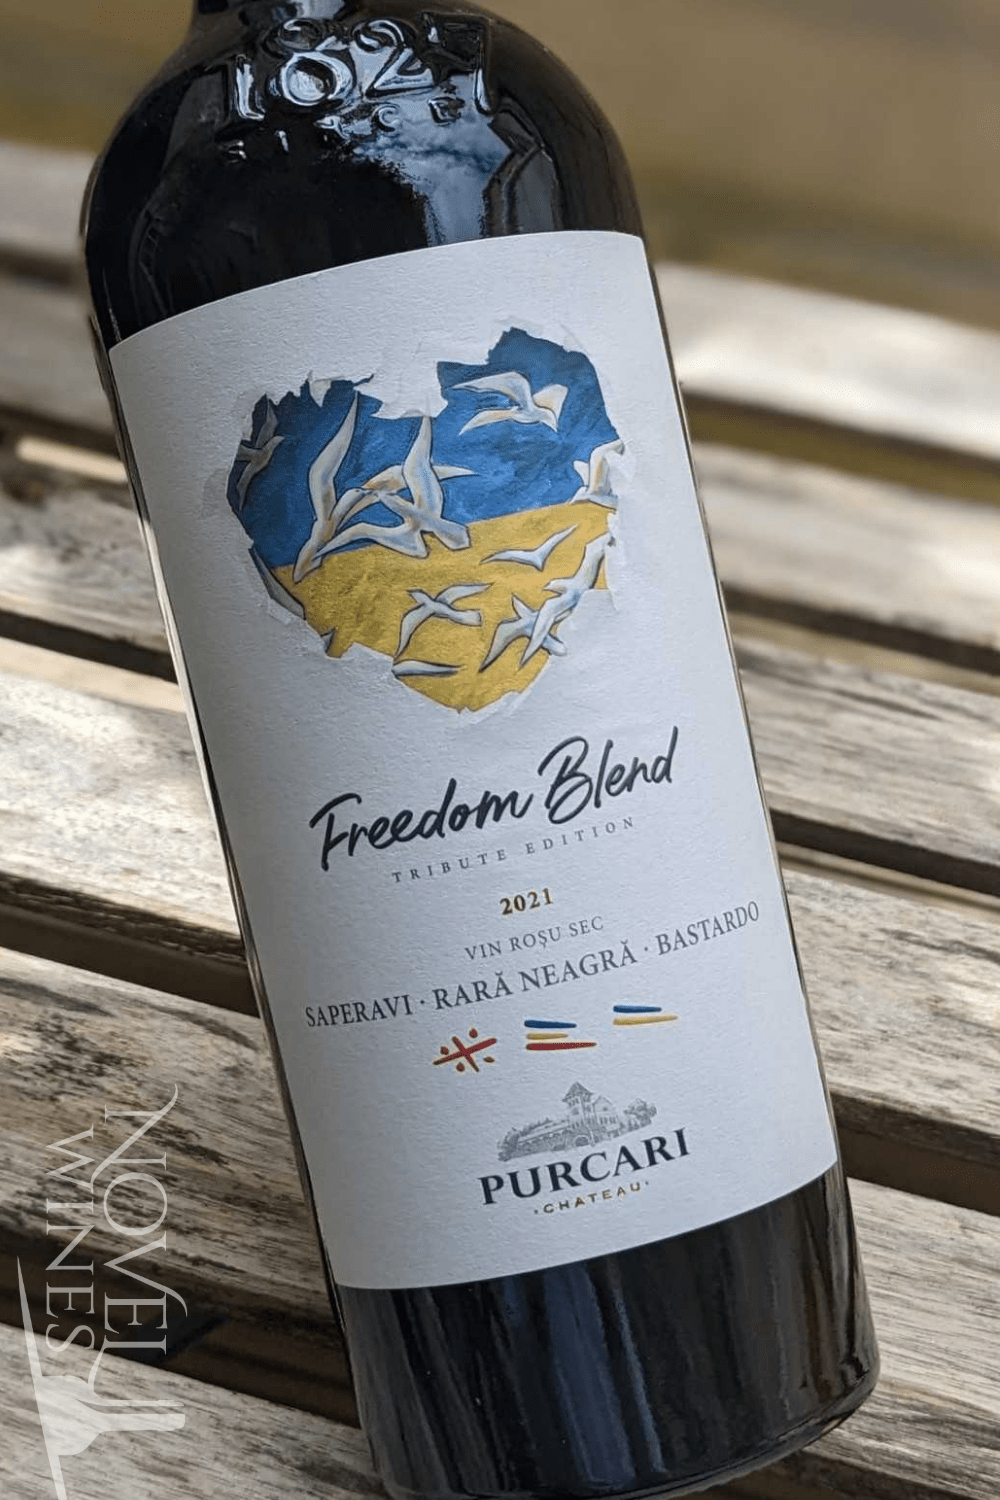 Chateau Purcari Red Wine Chateau Purcari Limited Edition Freedom Blend 2019, Moldova